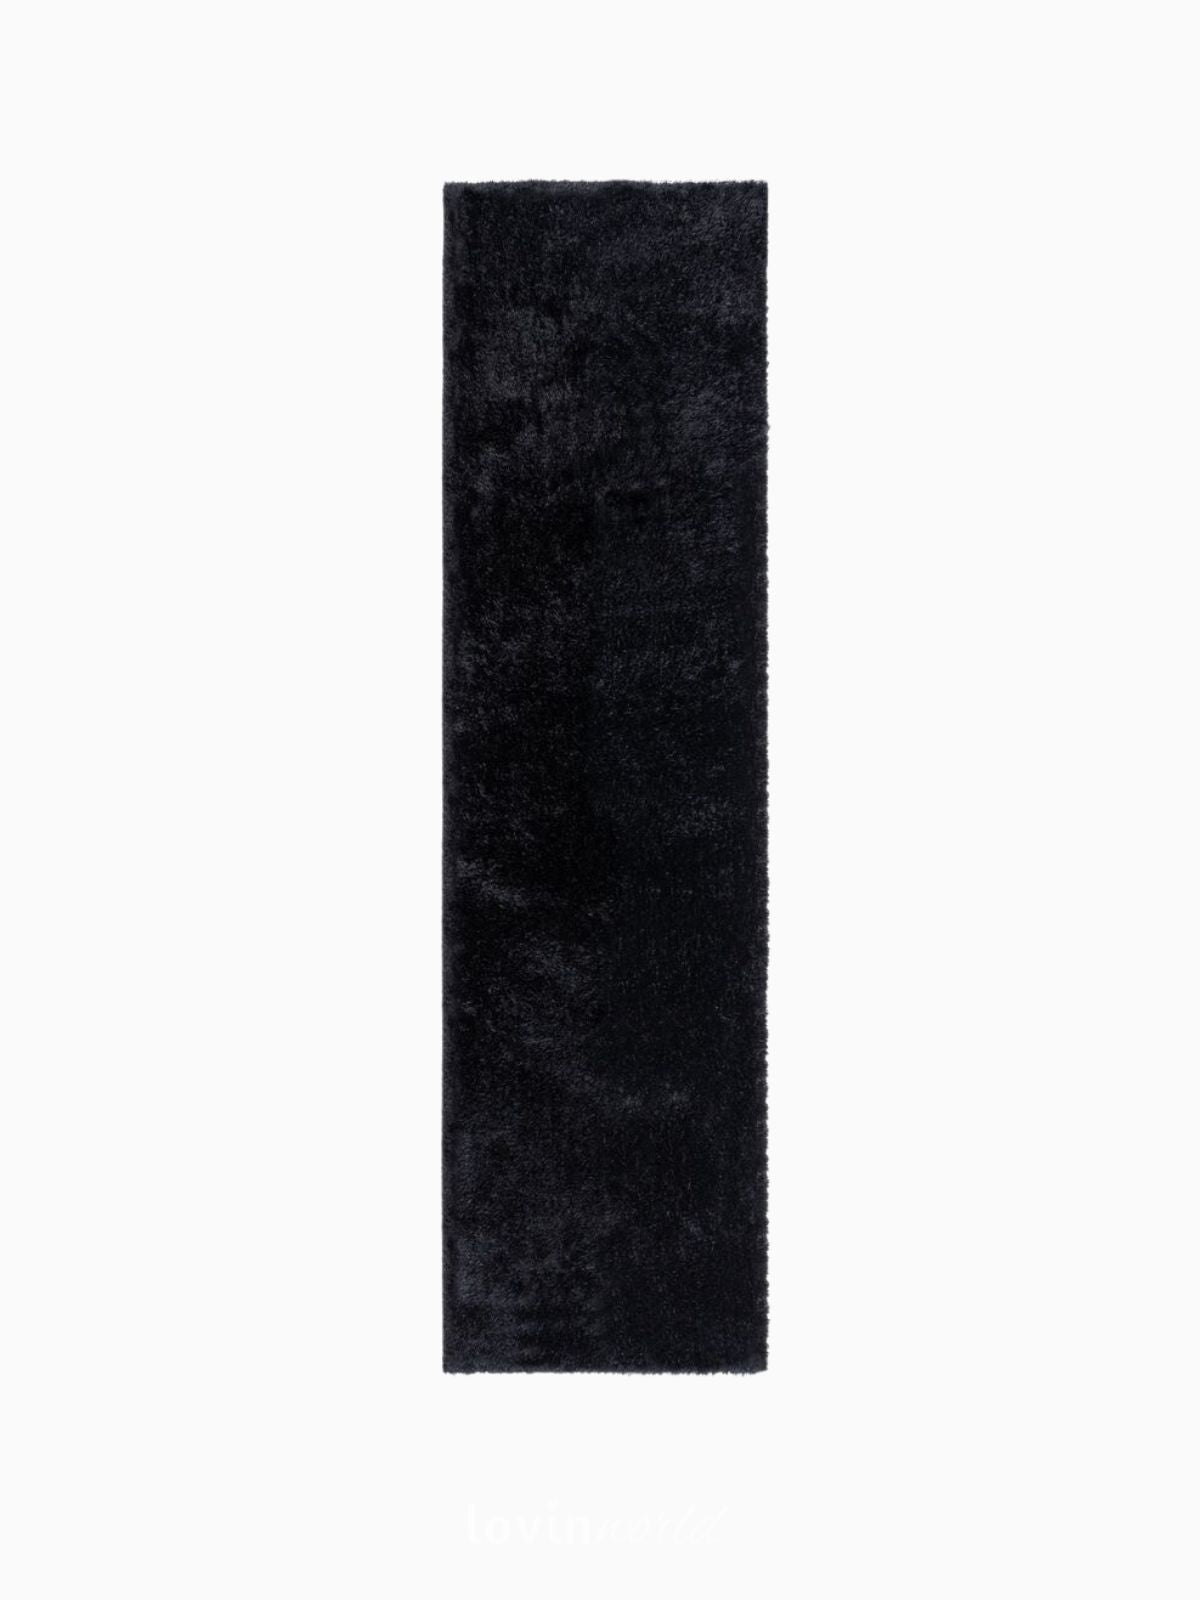 Runner shaggy Velvet in poliestere, colore nero 60x230 cm.-1